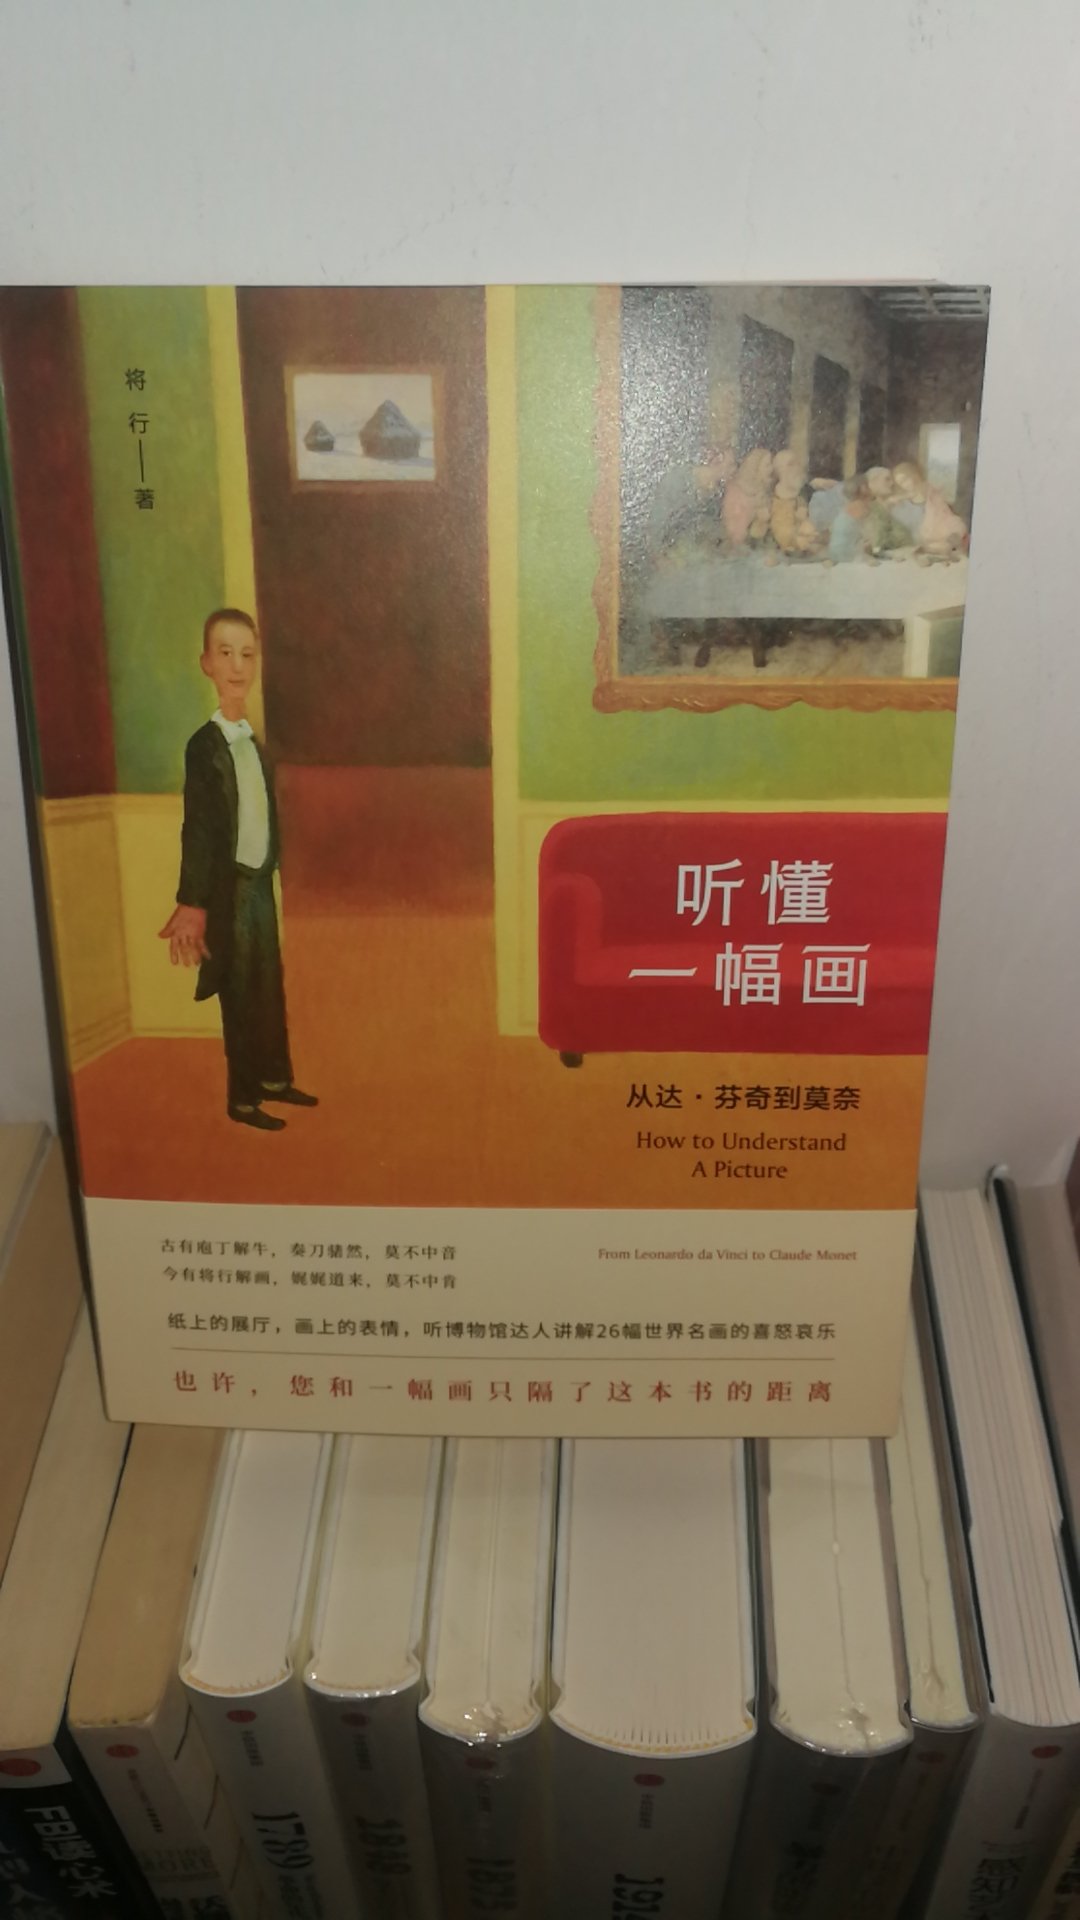 最近在清华艺术博物馆亲耳聆听将行的绘画讲解，收益极大，特地回来买了他的书，认真学习。